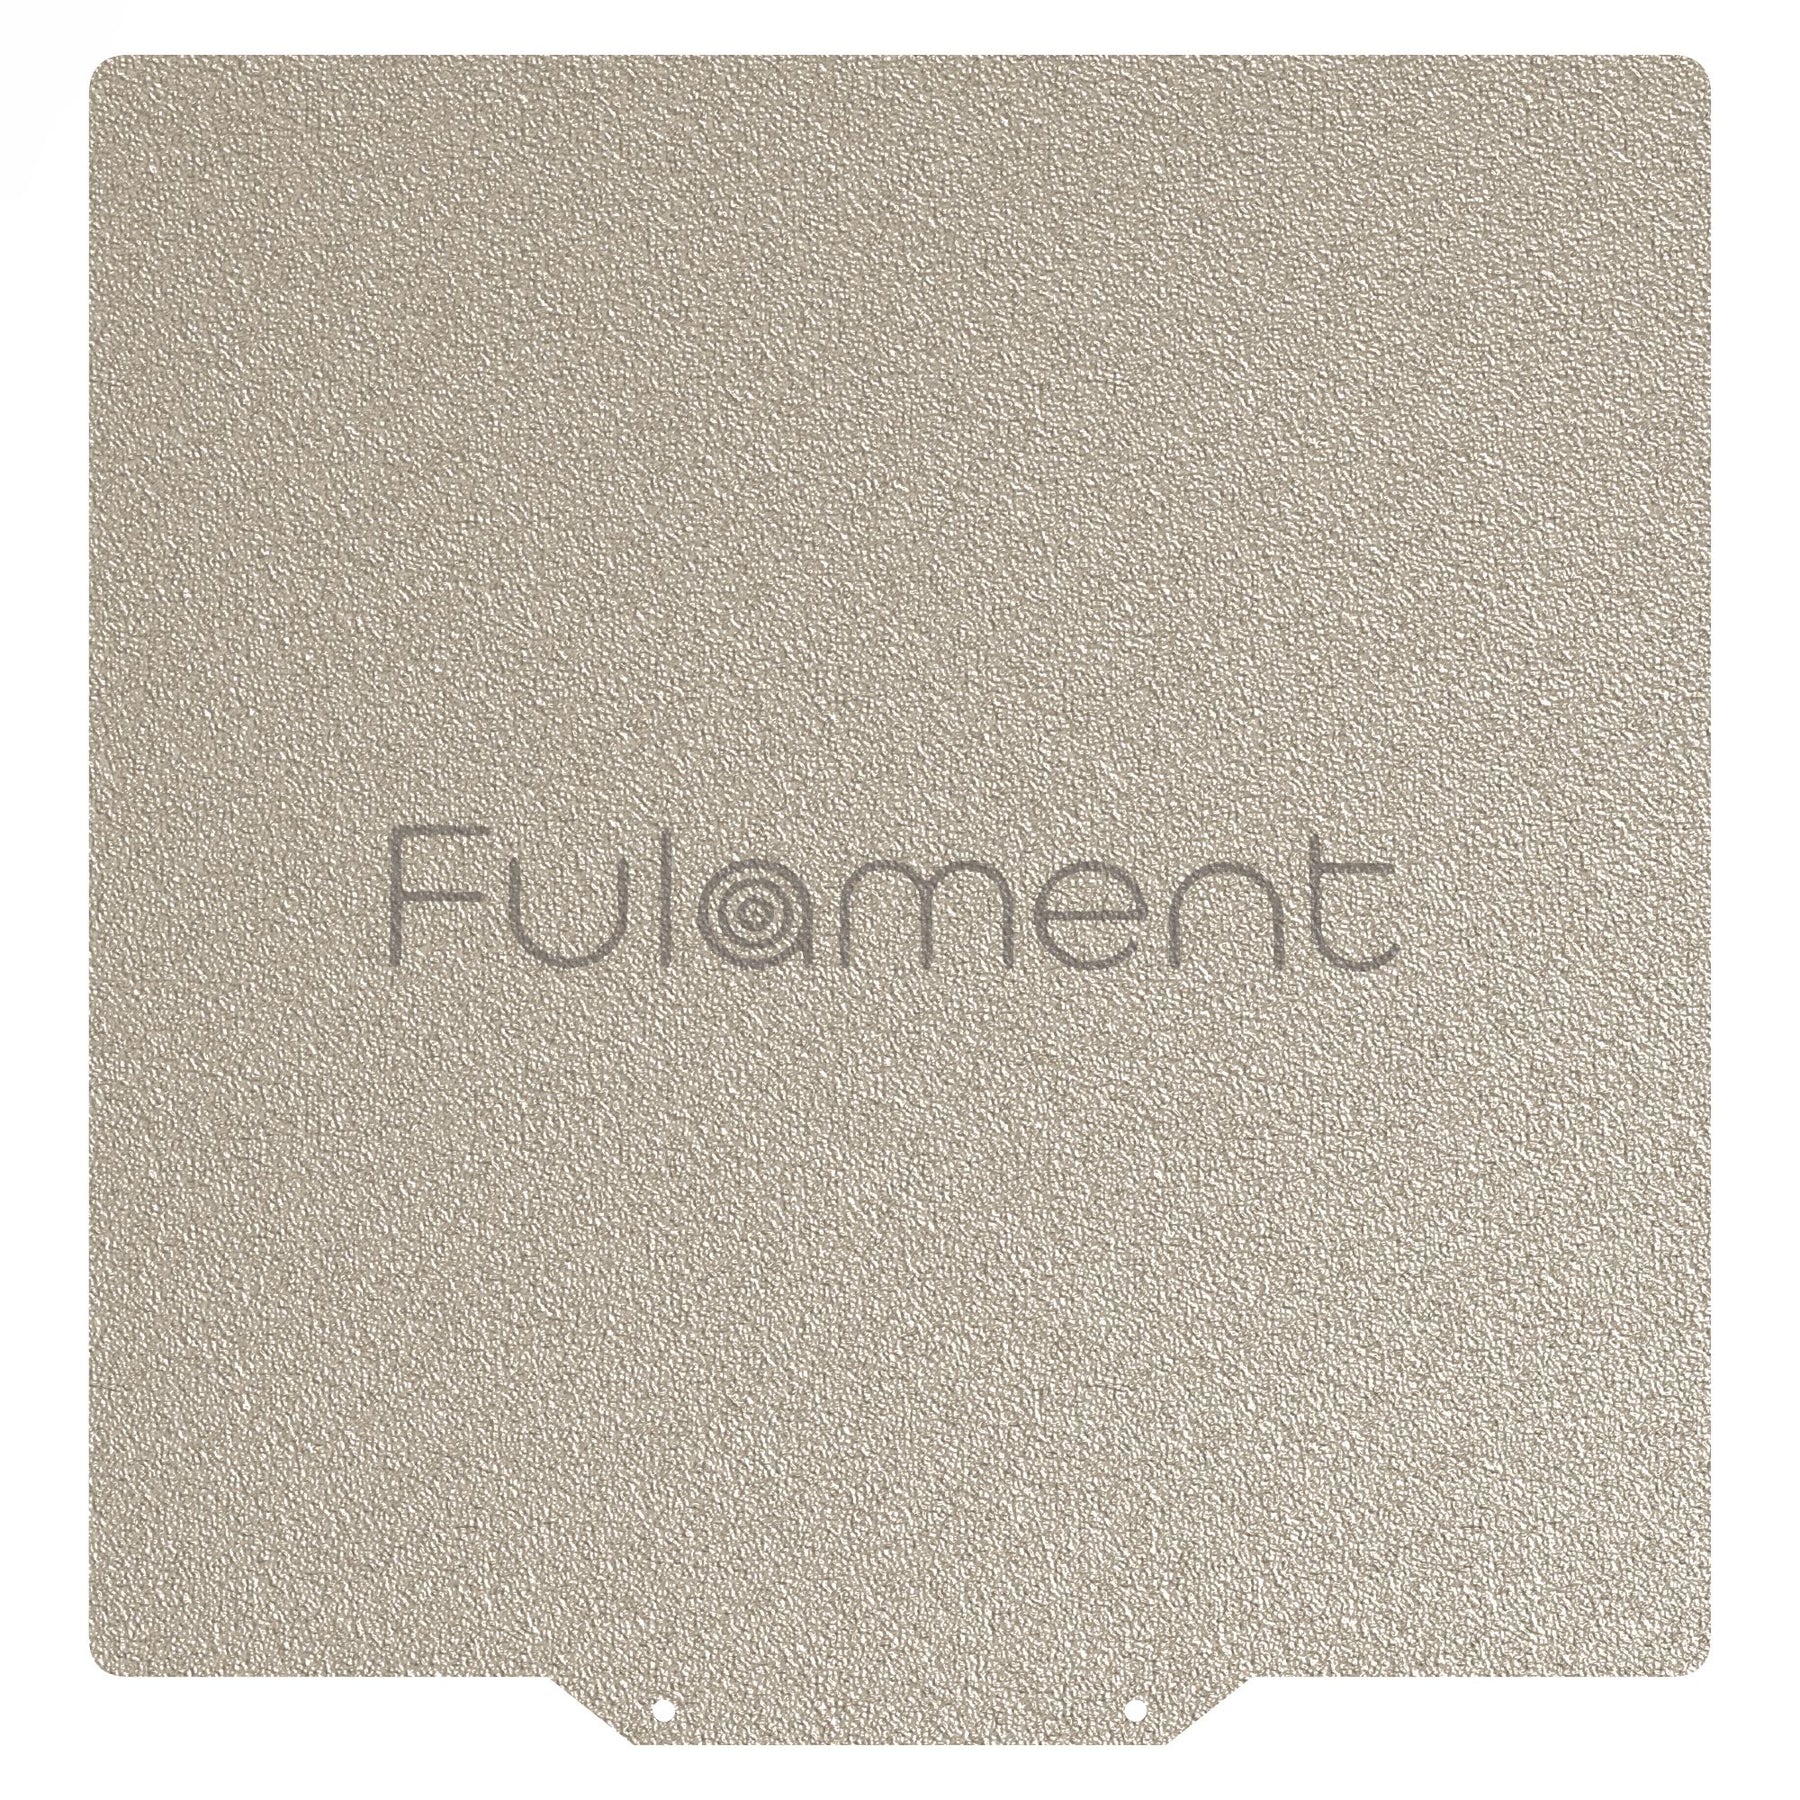 Fula-Flex 2.0 Fulament